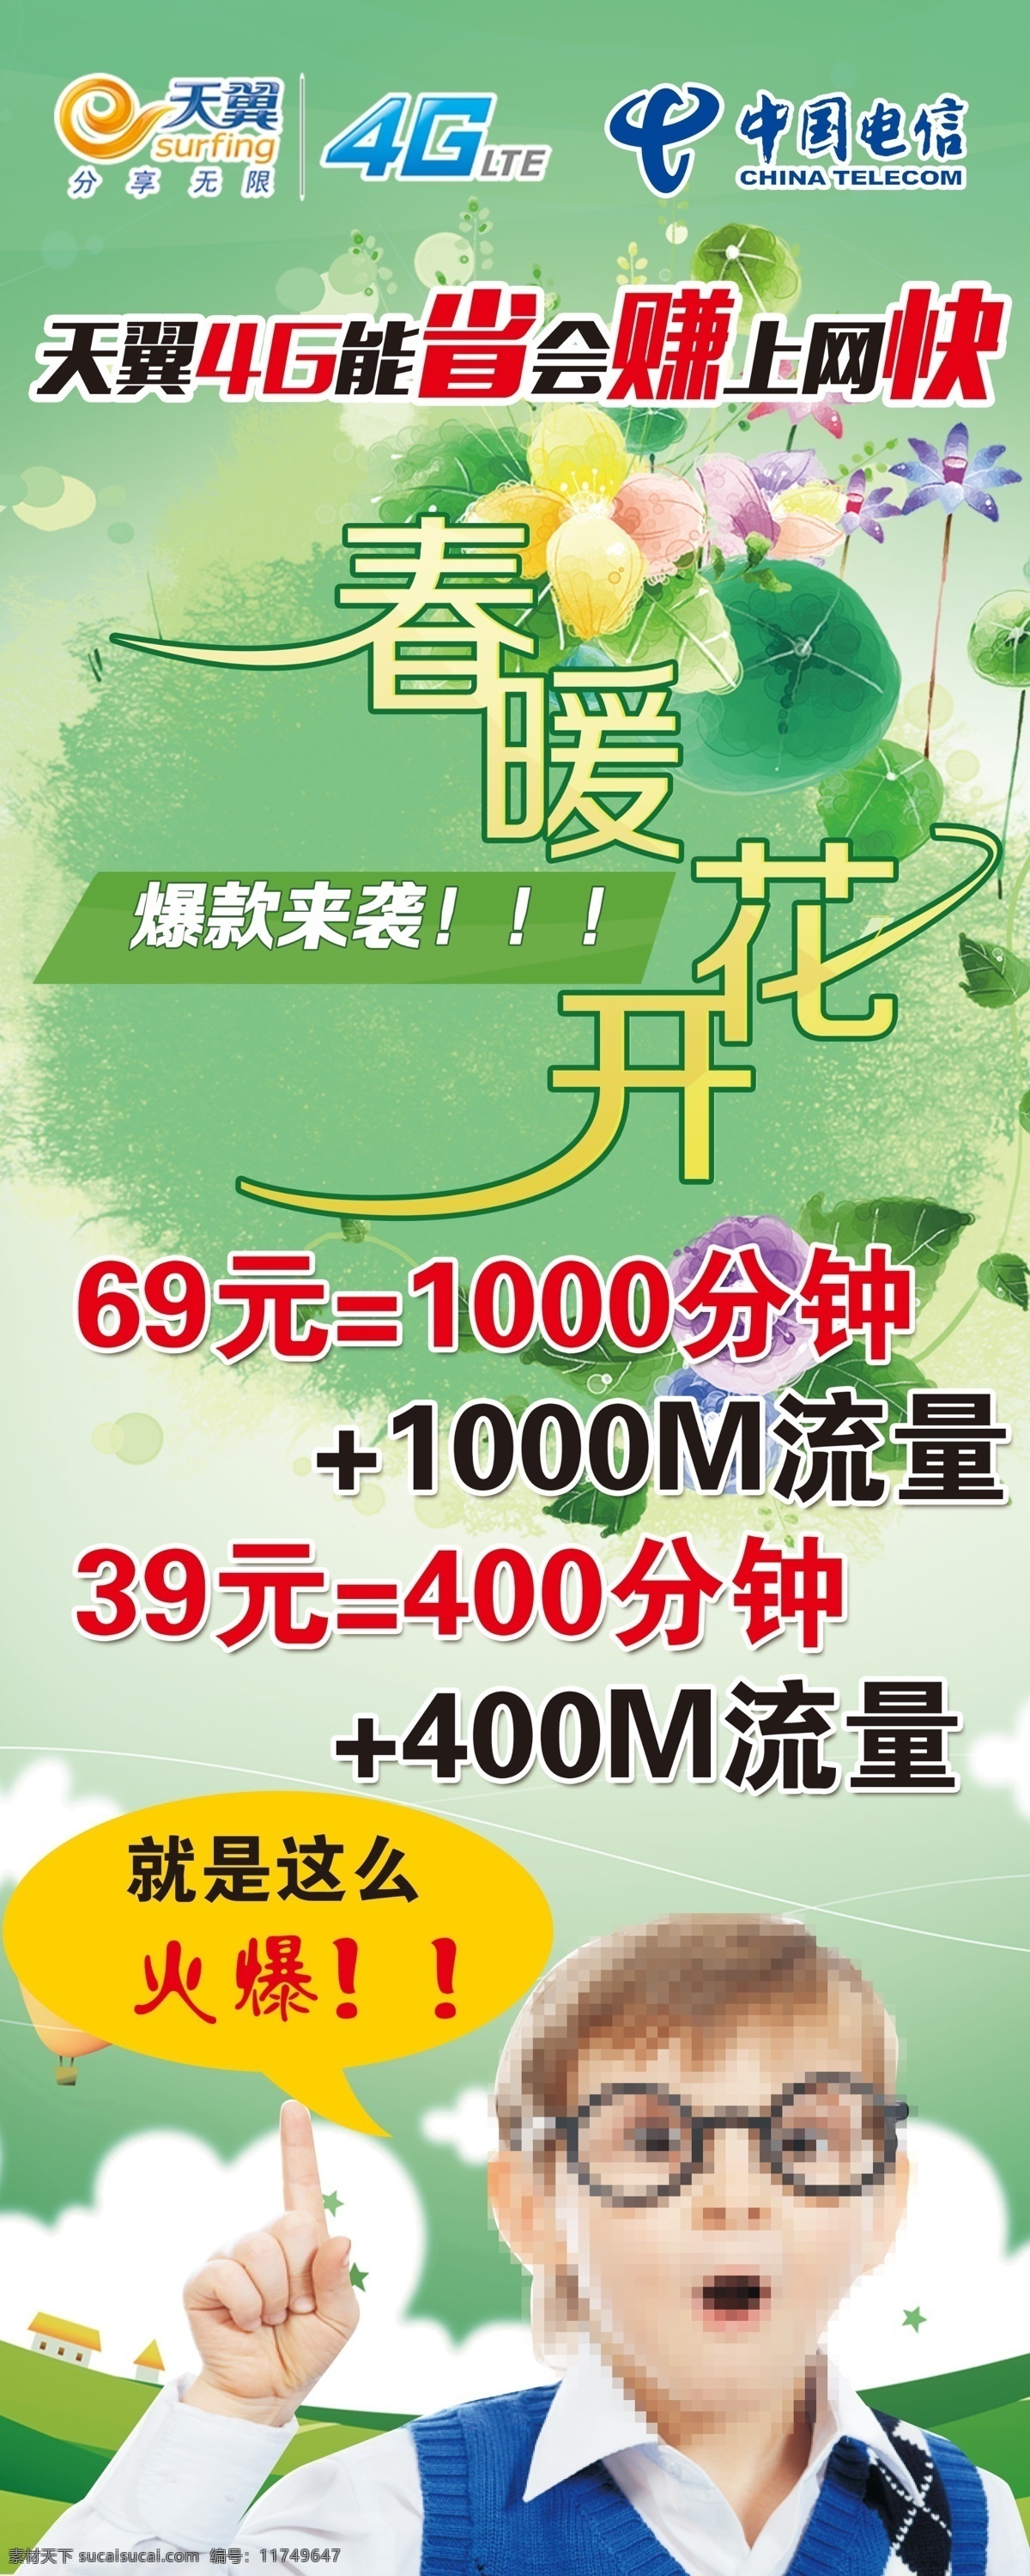 天翼4g海报 春暖花开 流量套餐 中国电信 惊讶的孩子 爆款来袭 绿色